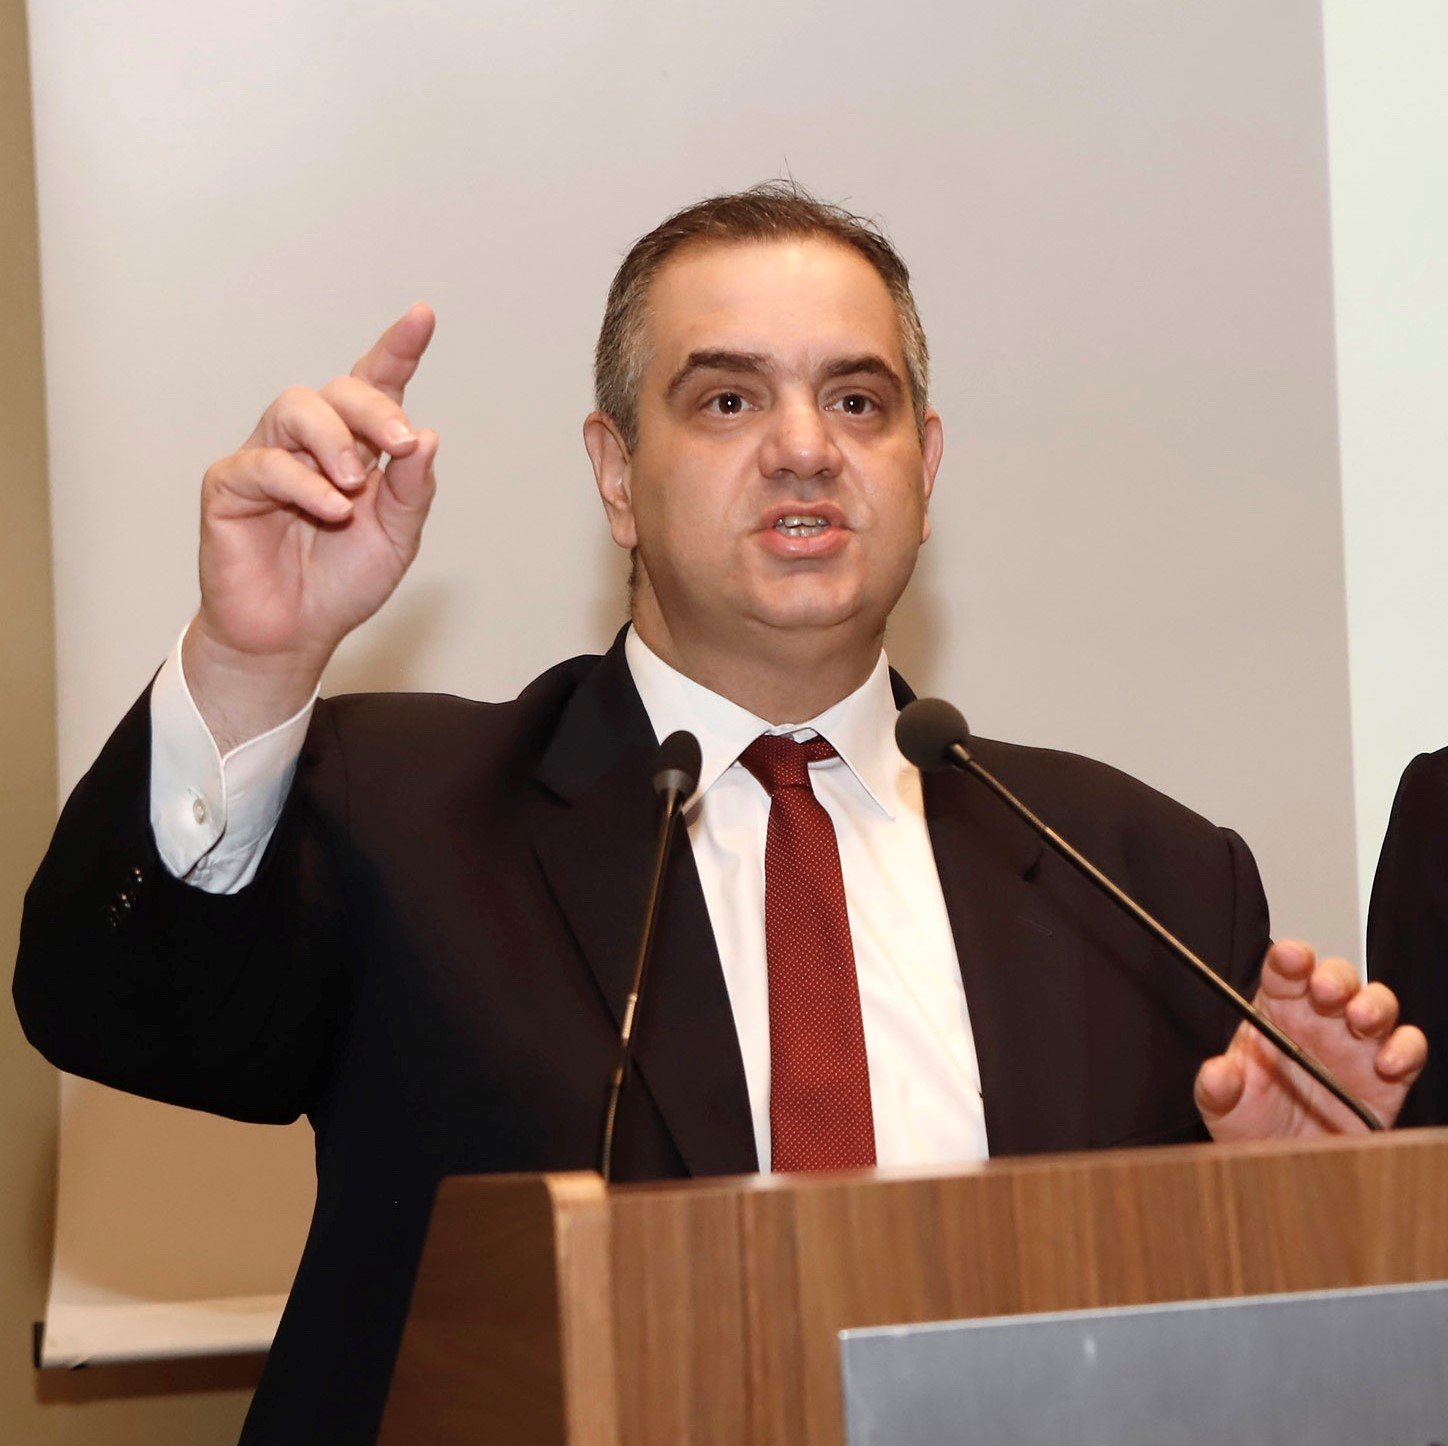 Βασίλης Σπανάκης: Δεκτή η τροπολογία Σπανάκη για παράταση προθεσμιών και άρση ανάκλησης επαγγελματικών αδειών υπαίθριου εμπορίου για κοινωνικούς λόγους